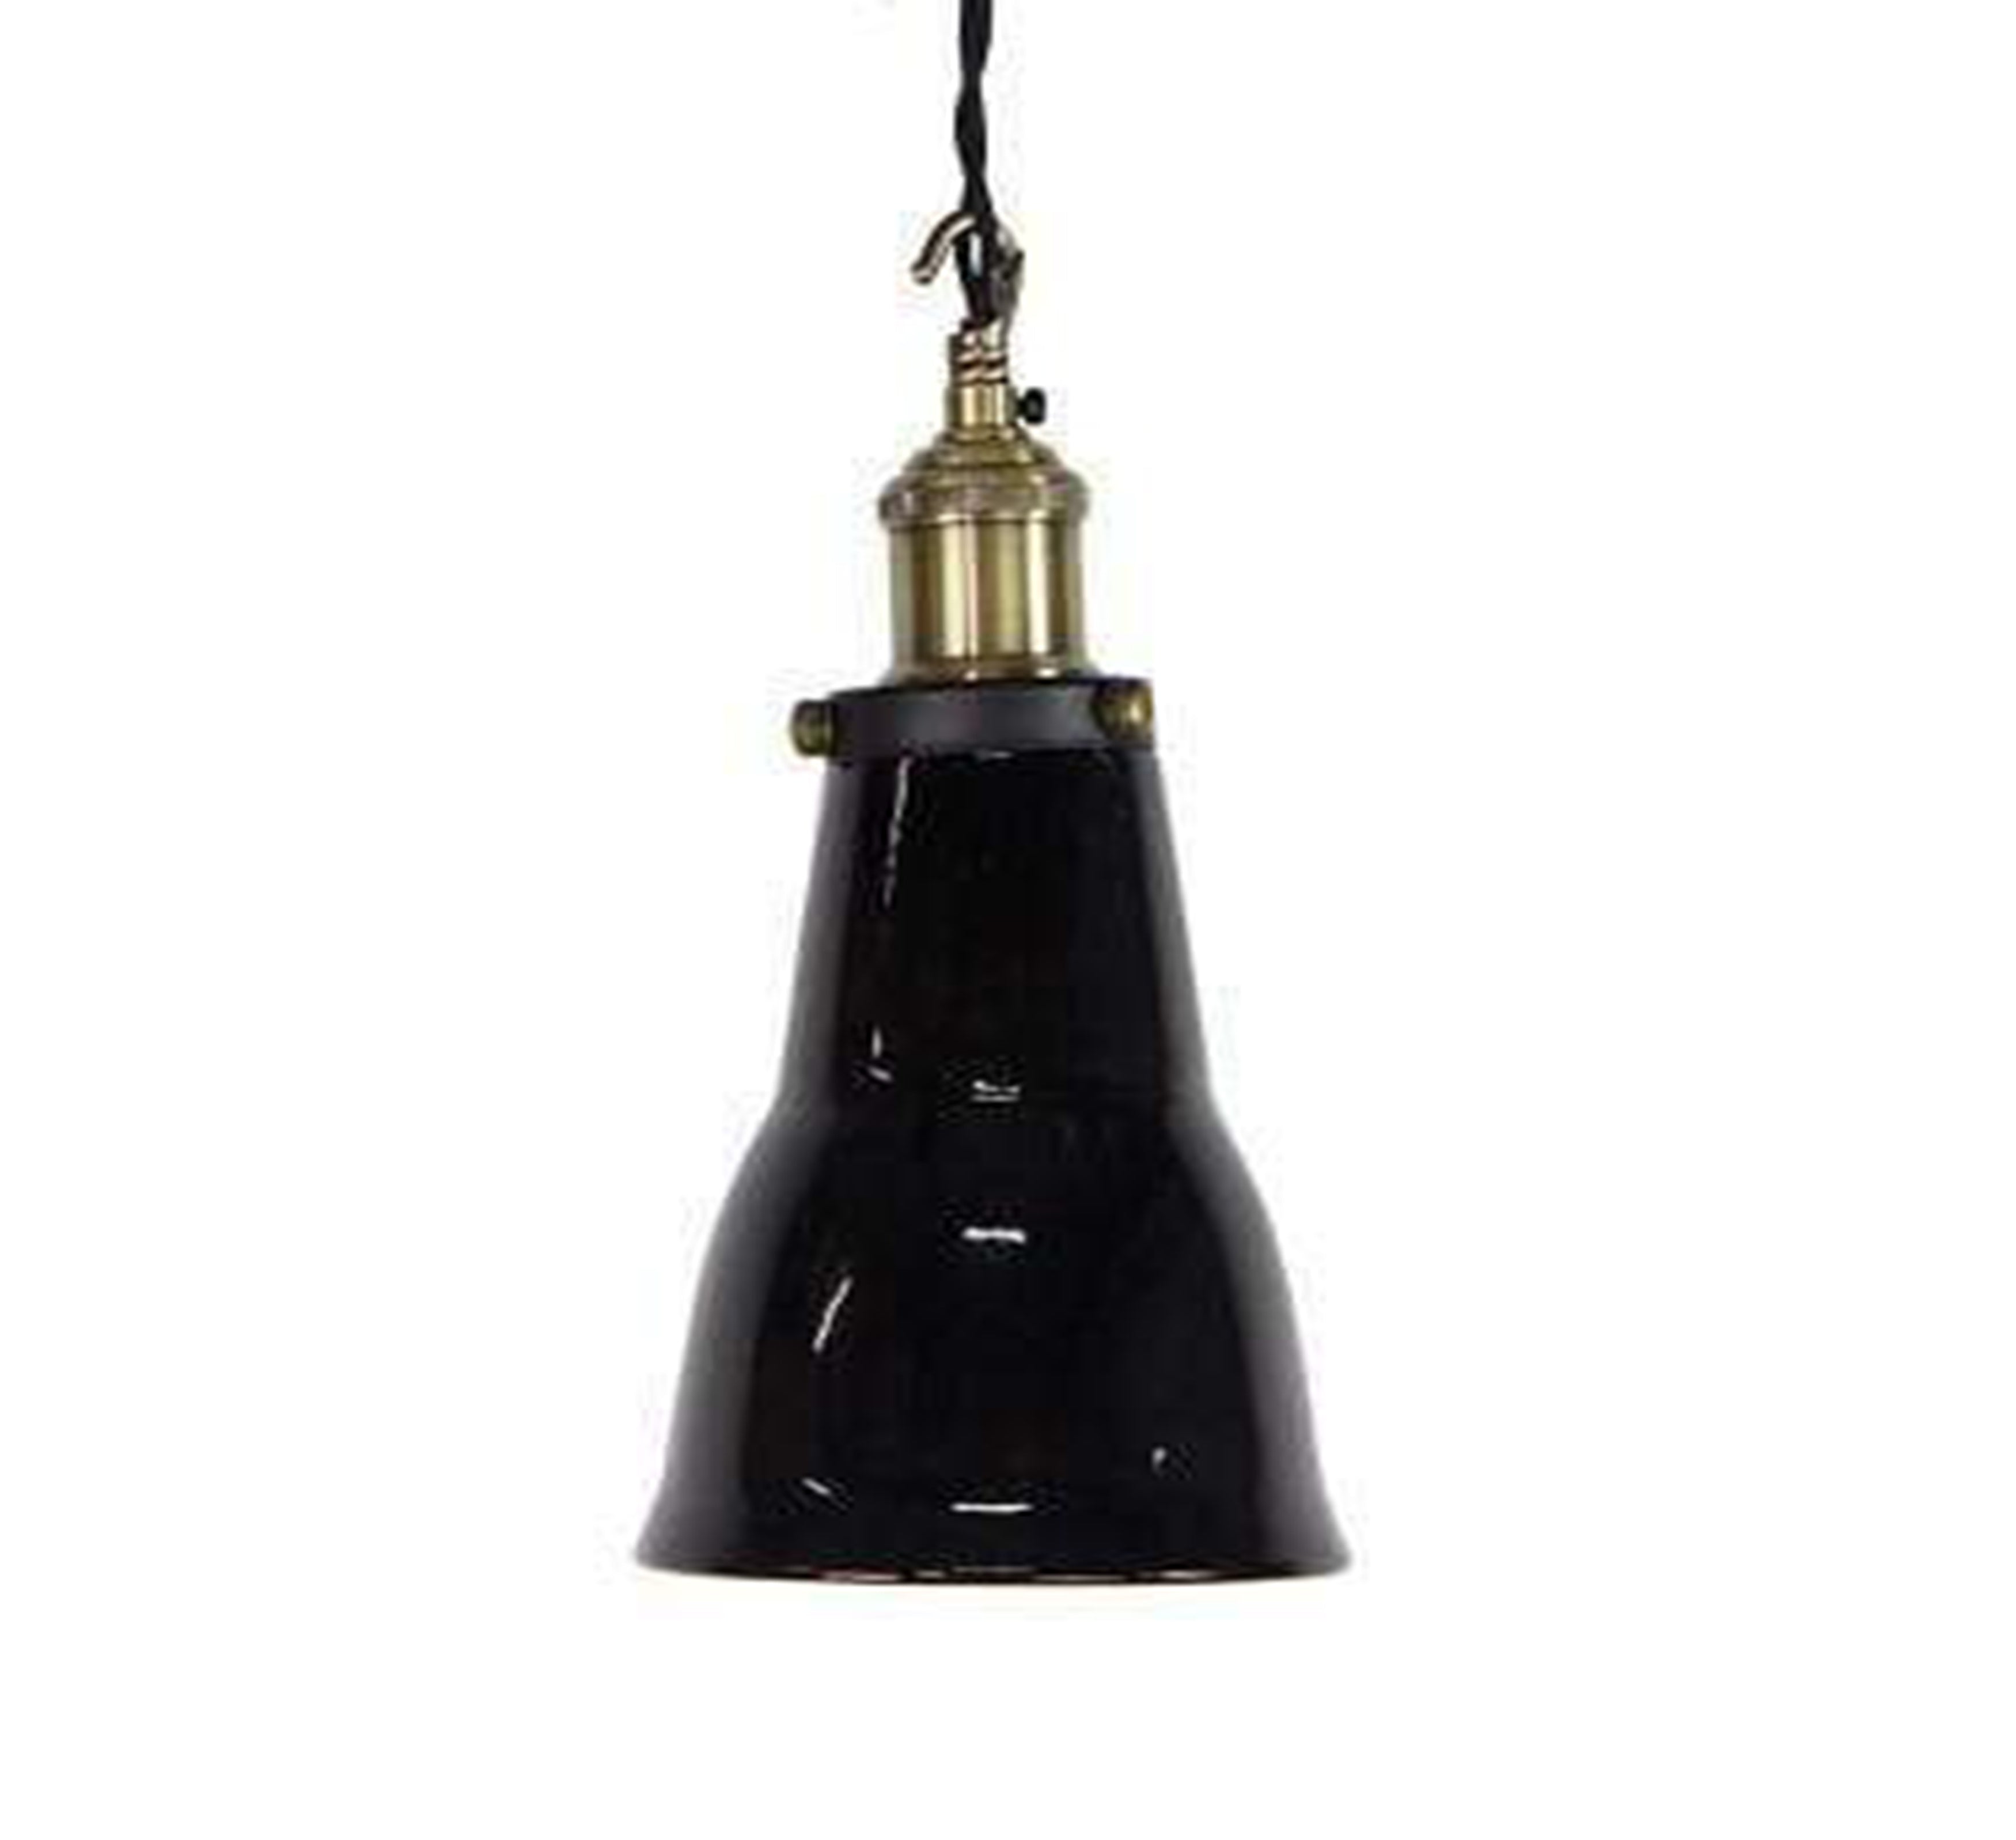 Enamel Tumbler Ceiling Lamp